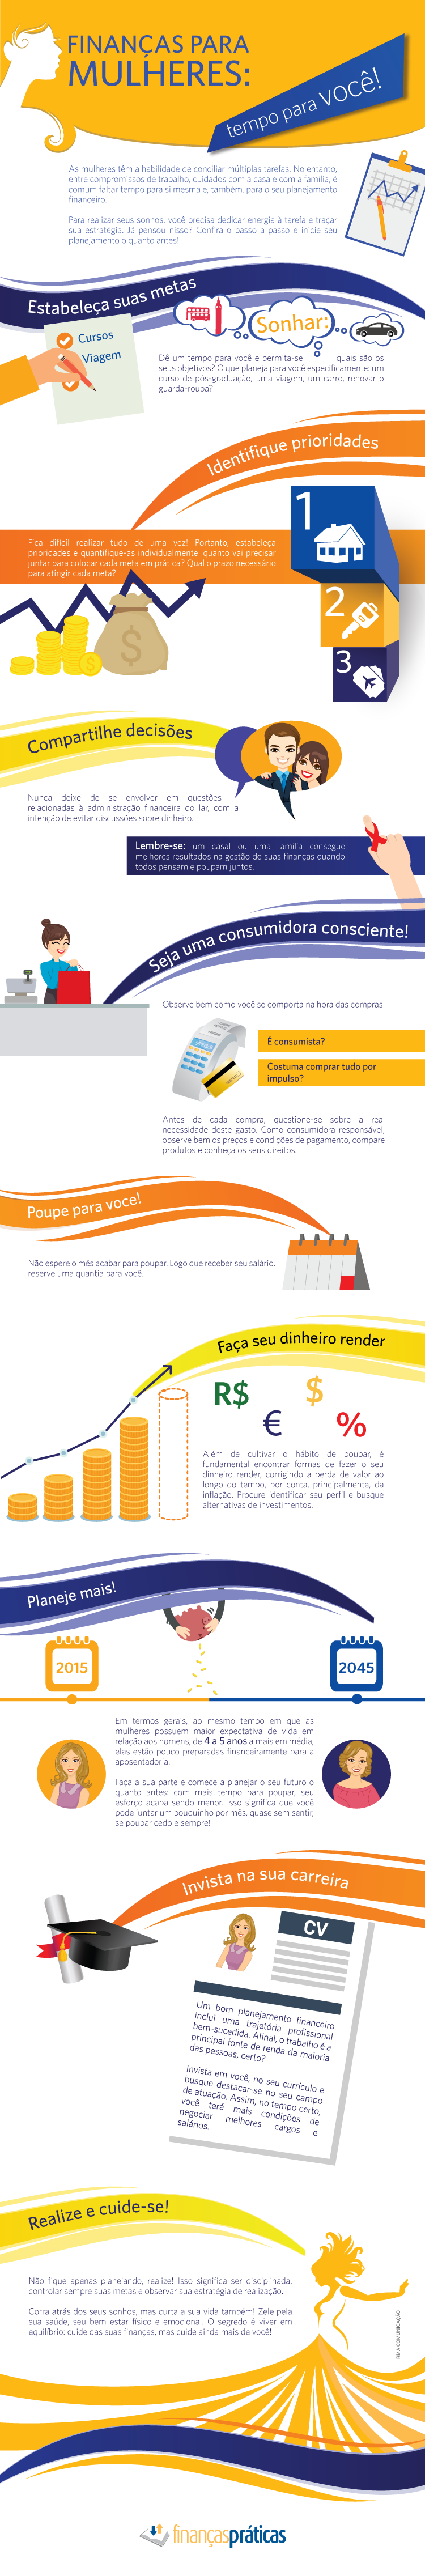 inphografics infográfico mulheres finanças economia economy poupar futuro dinheiro lucro investimento design